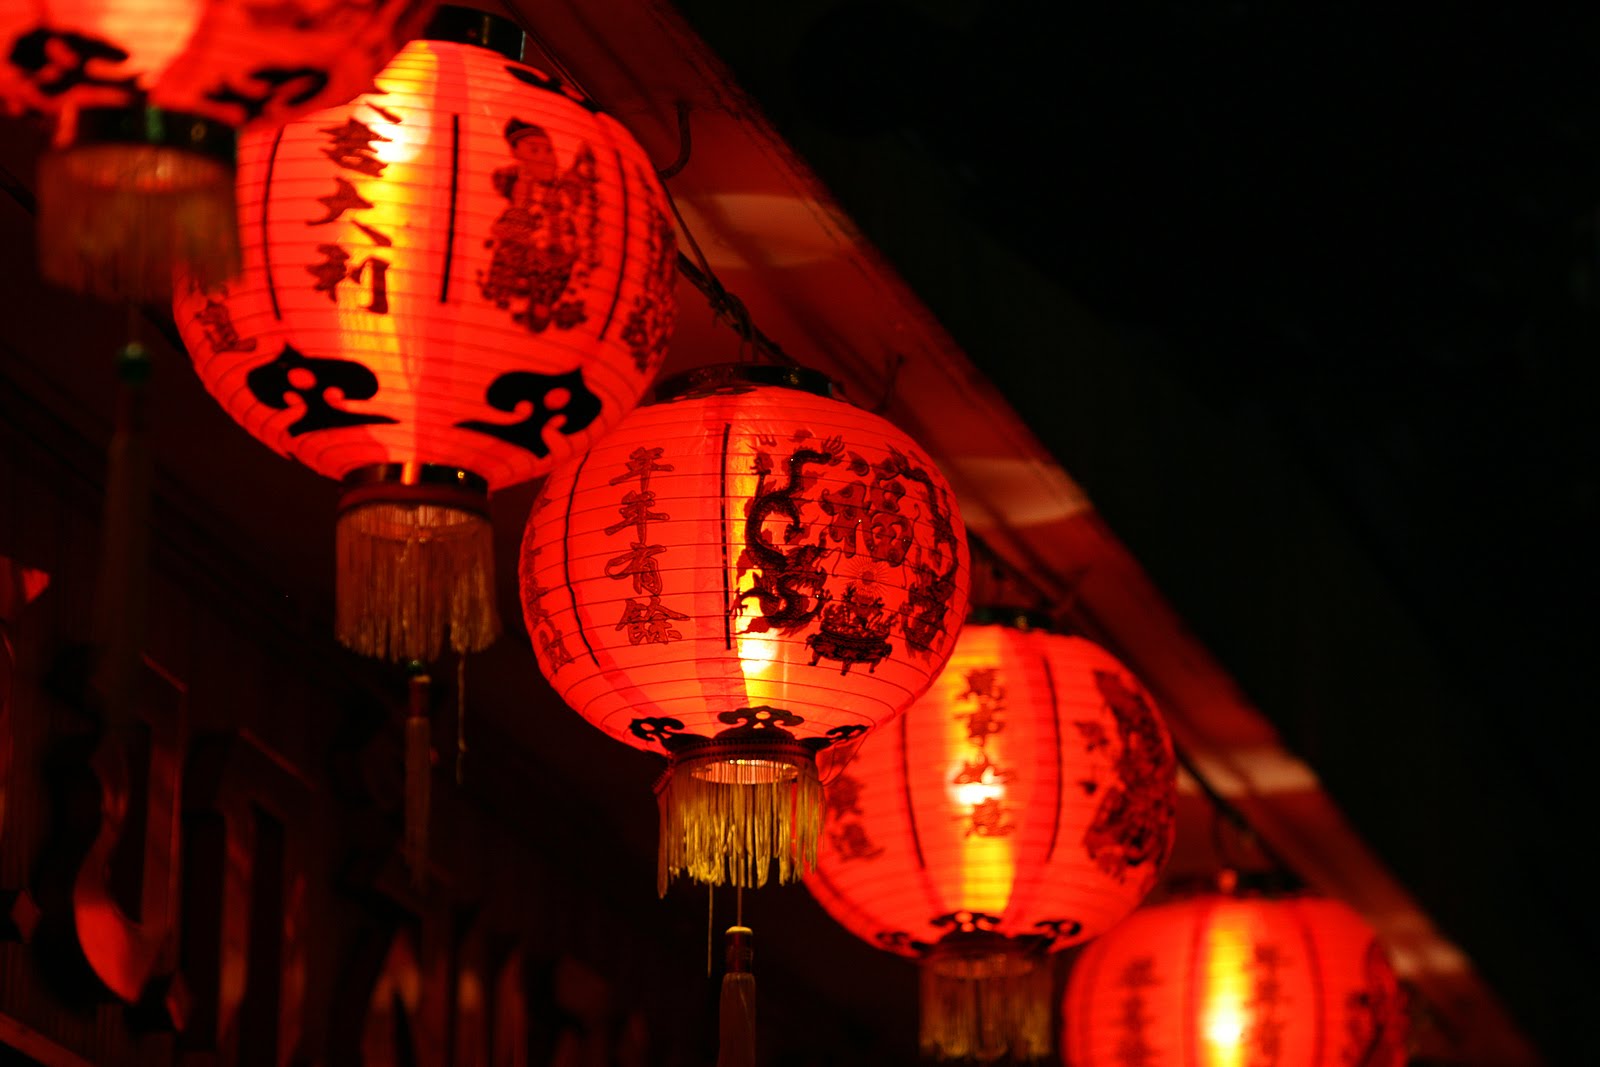 chinesische laternentapete,beleuchtung,laterne,rot,licht,beleuchtungszubehör